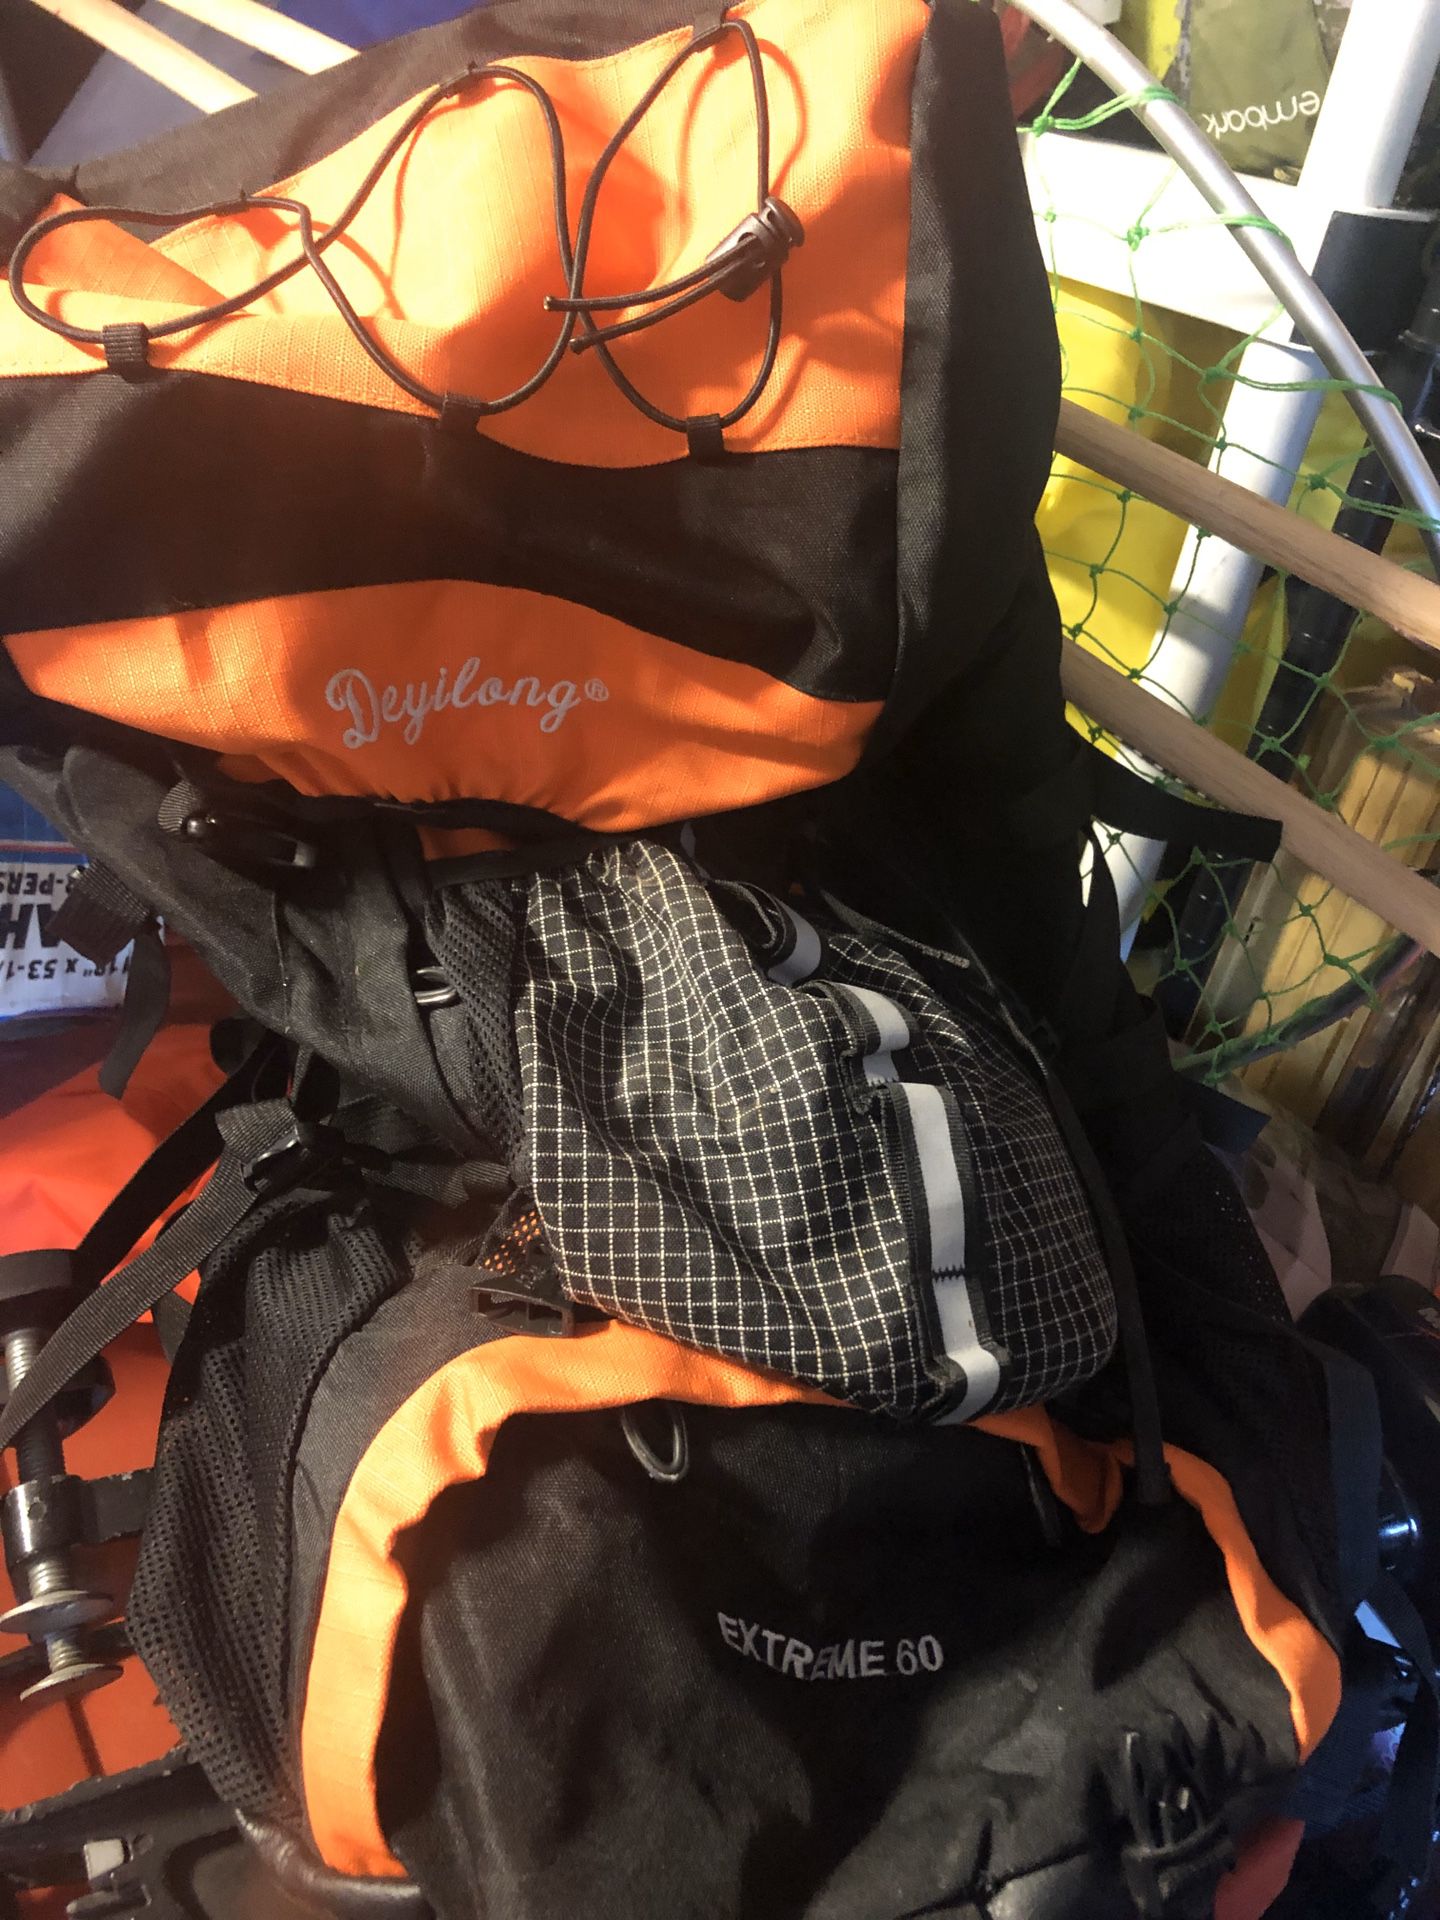 Deyilong Extreme 60 hiking backpack